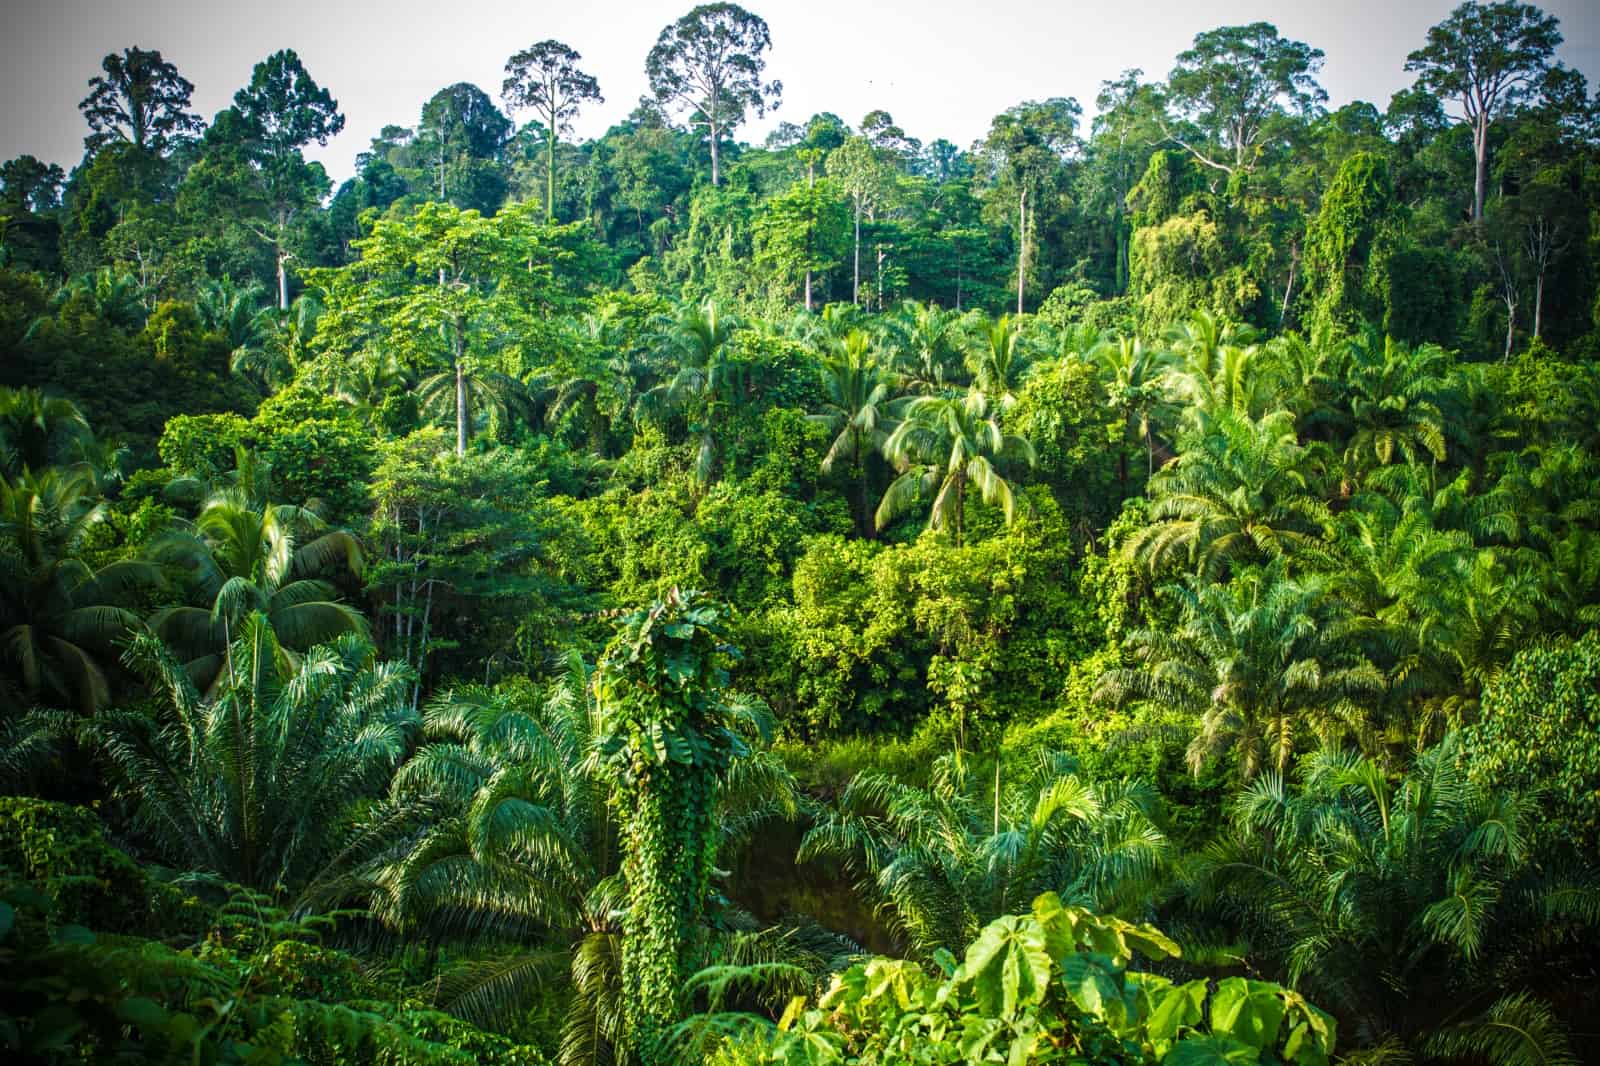 Regenwald auf Borneo: Der WWF setzt sich für mehr Schutzgebiete ein, © by J.Bours/WWF-NL